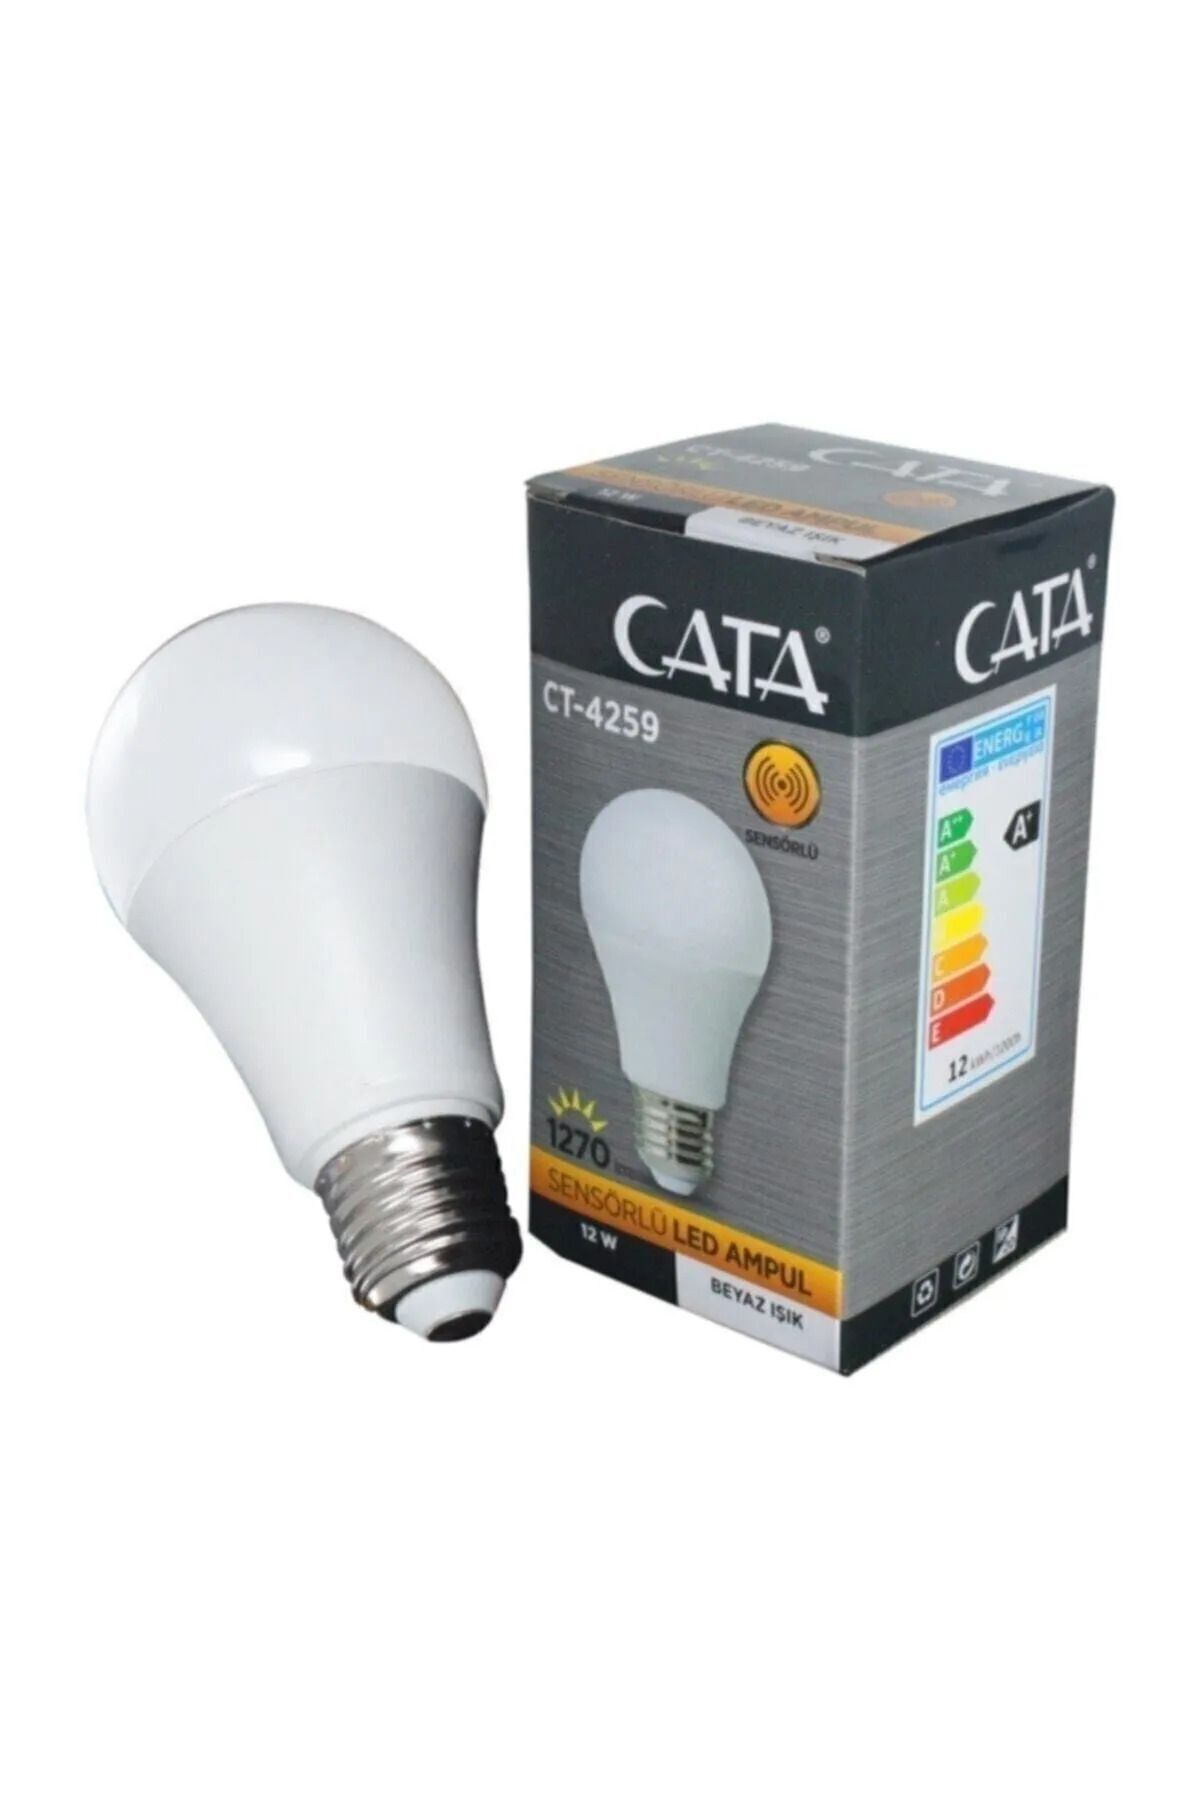 Cata 12 W Led Sensörlü Ampül Ct-4259